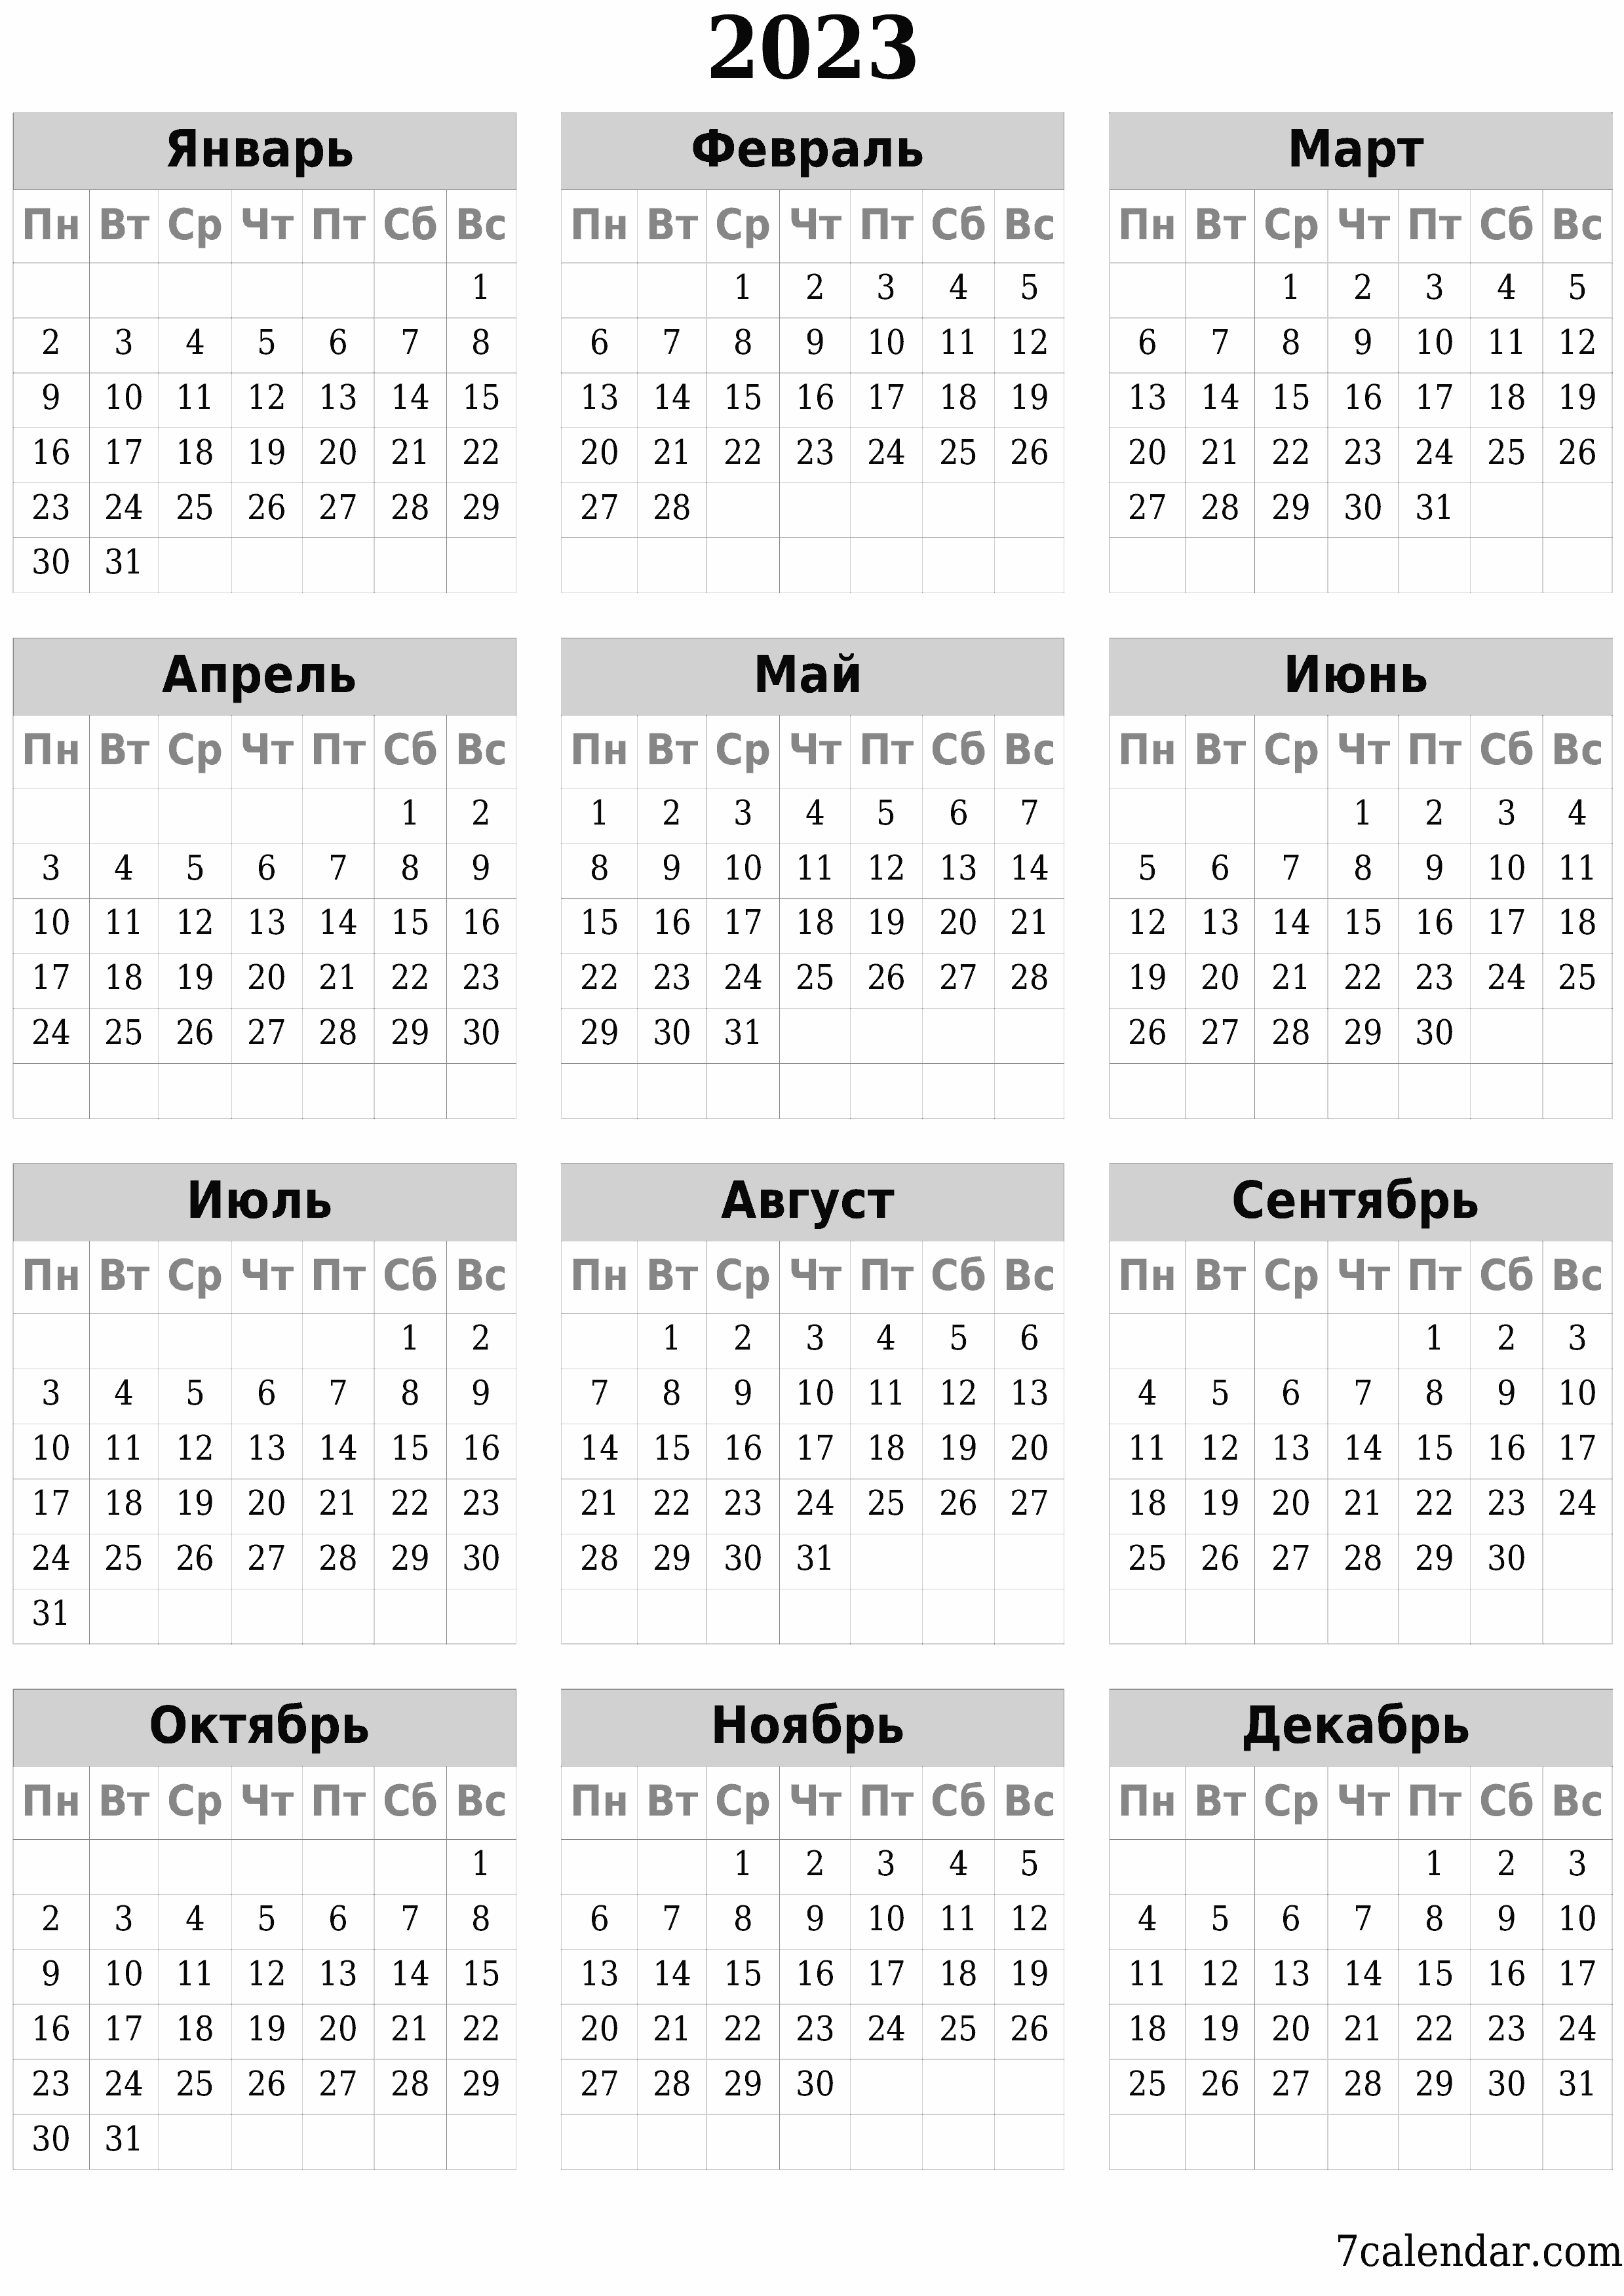 Календари и планеры для печати Январь 2023 A4, A3 в PDF и PNG - 7calendar